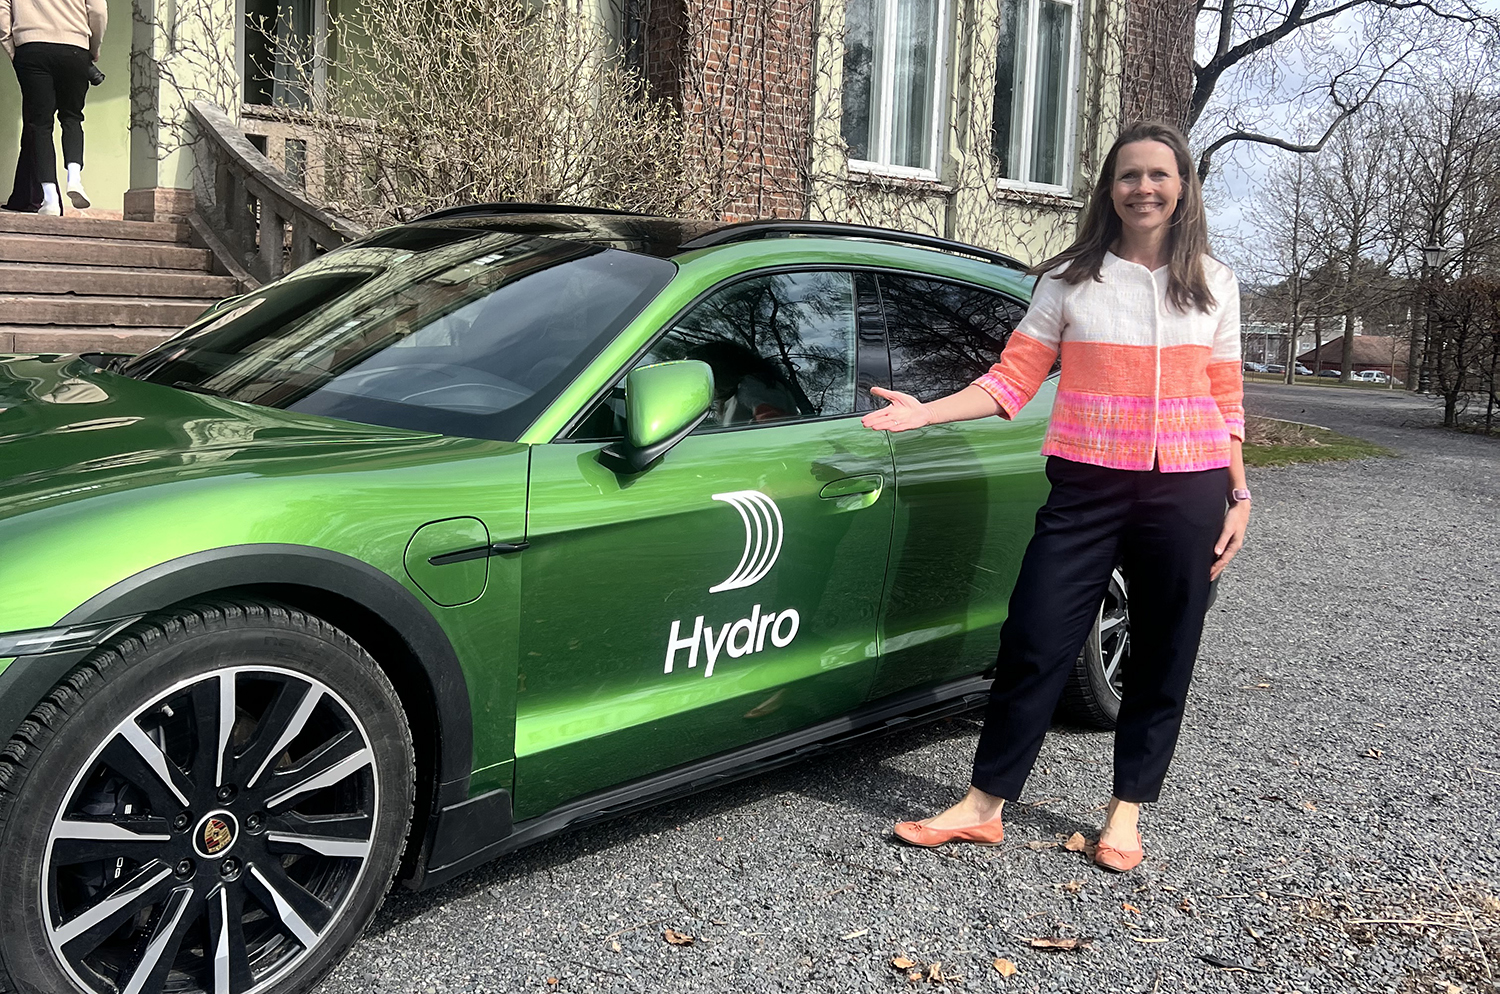 Bilde fra lansering av Porsche og Hydro-samarbeid med Executive Vice President for Kommunikasjon og Myndighetskontakt i Hydro, Therese Rød Holm, som står foran en grønn bil. Foto: Hilde Haugen Kallevig, Hydro.